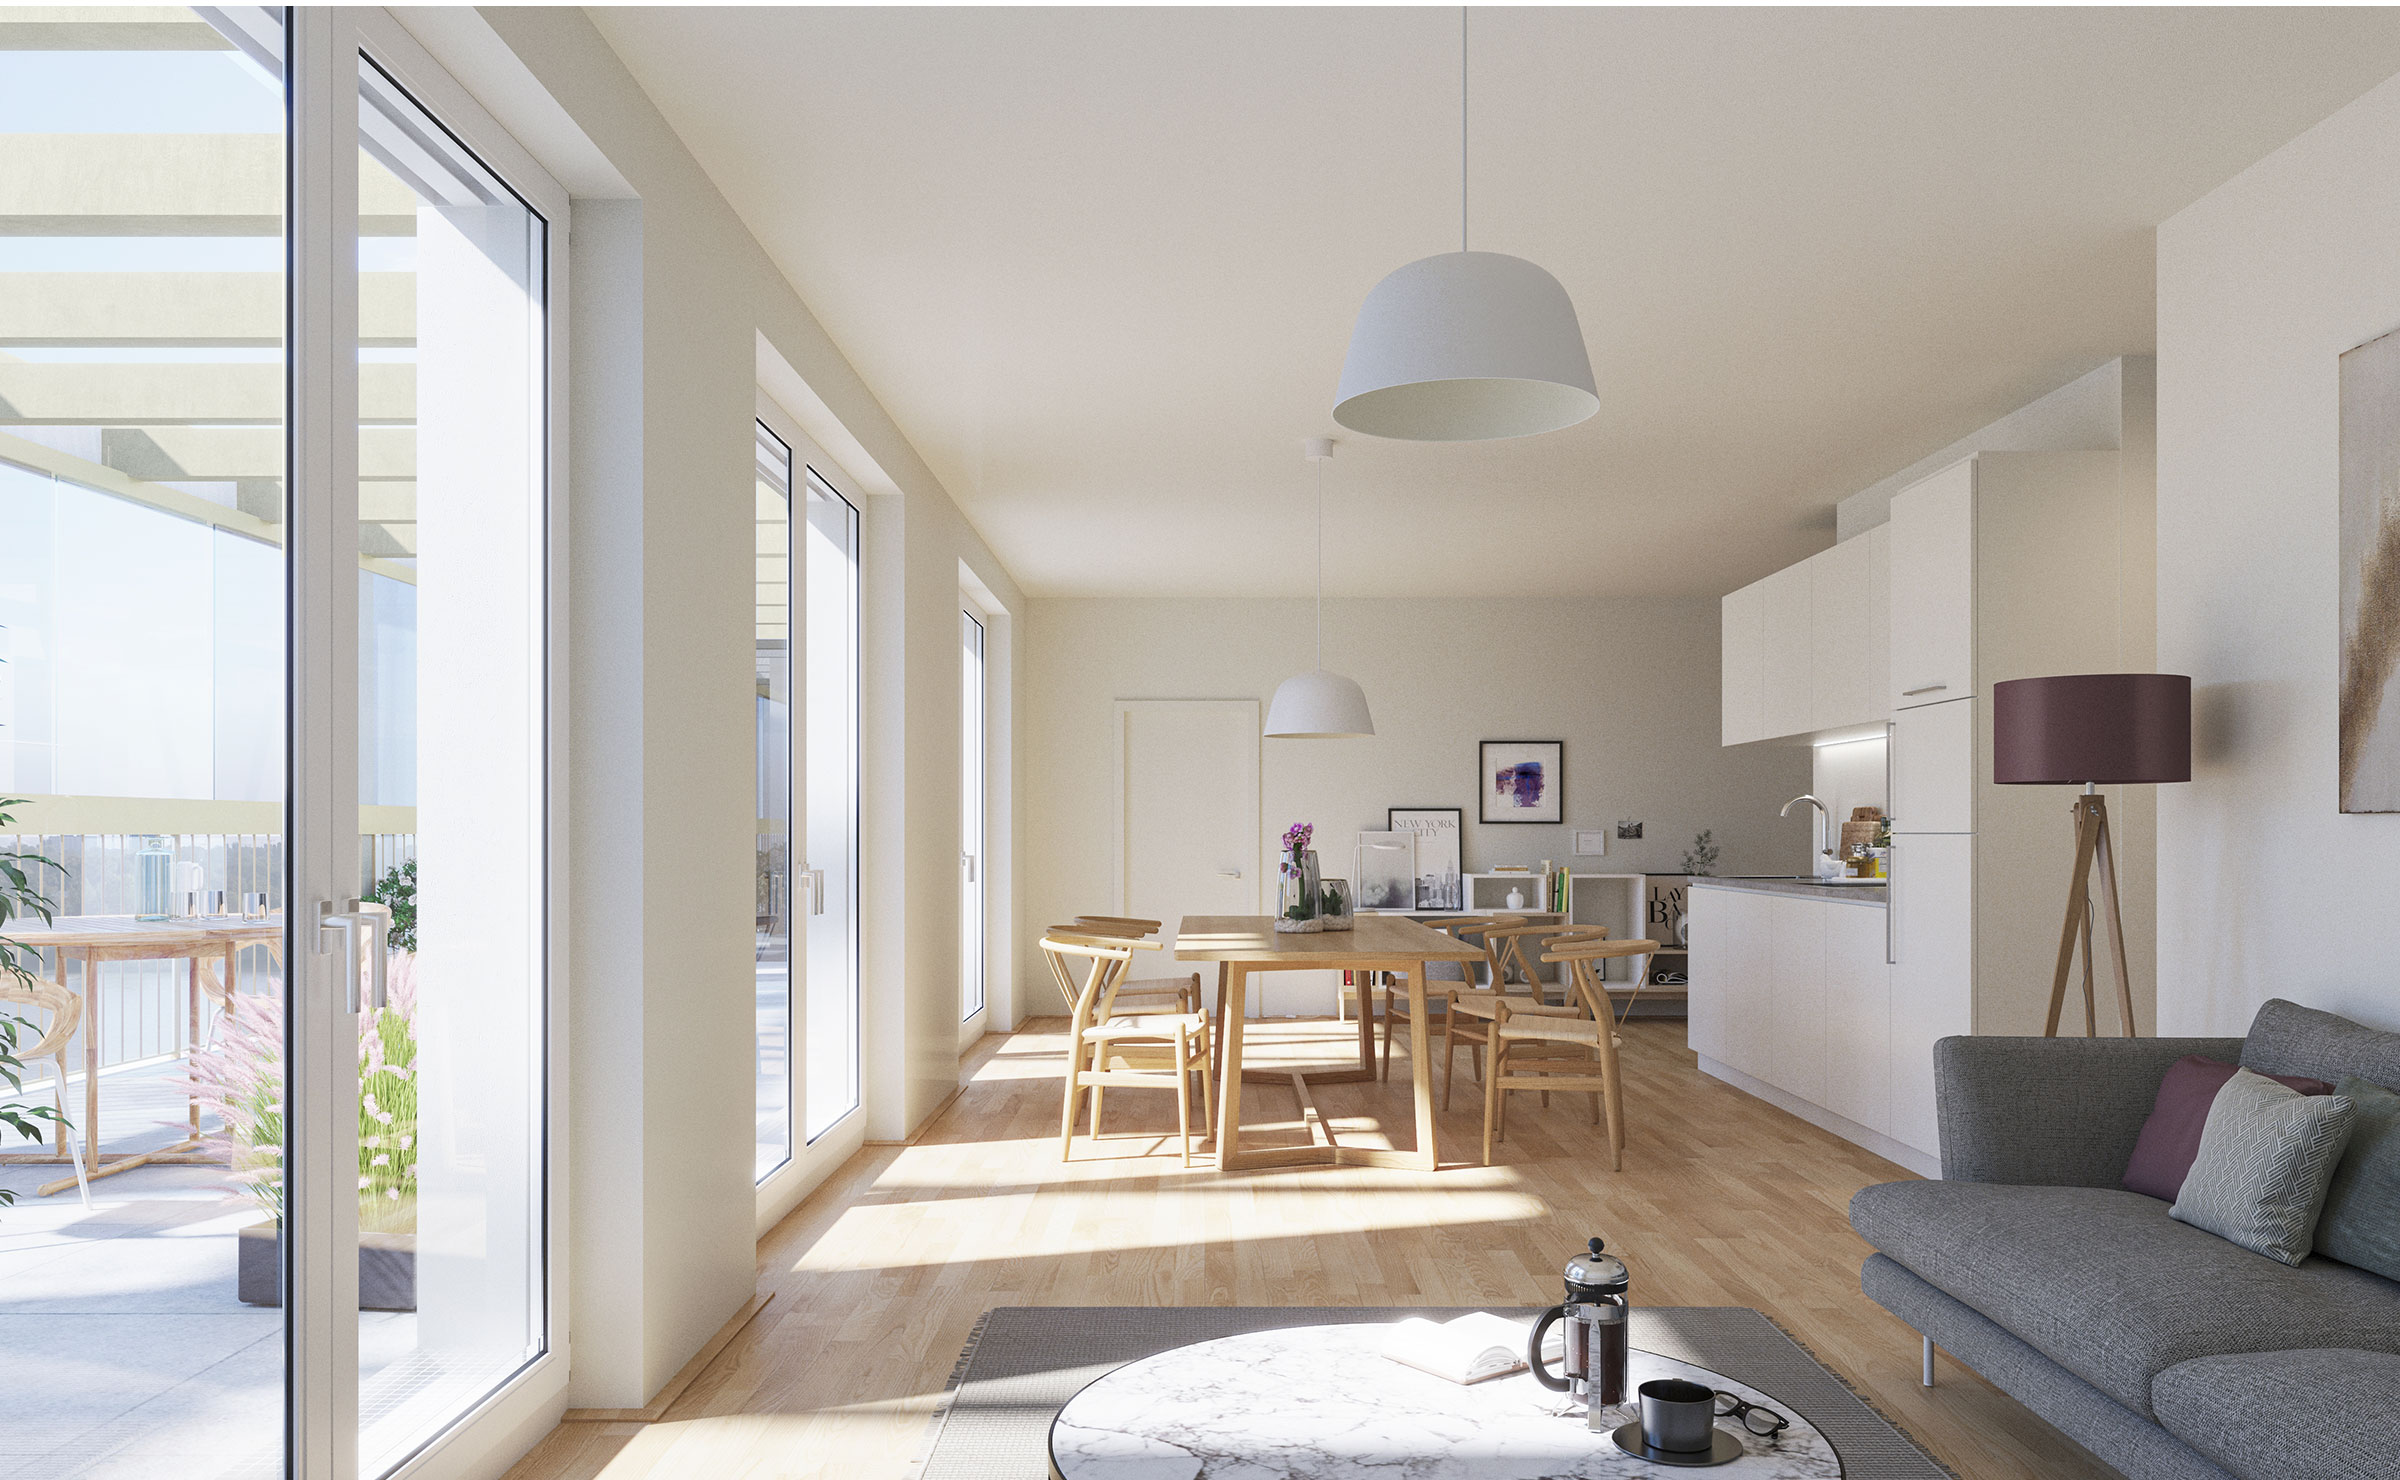 Die neue Dimension des Wohnens: Helle, lichtdurchflutete Räume mit viel Komfort und qualitätsvollen Detaillösungen